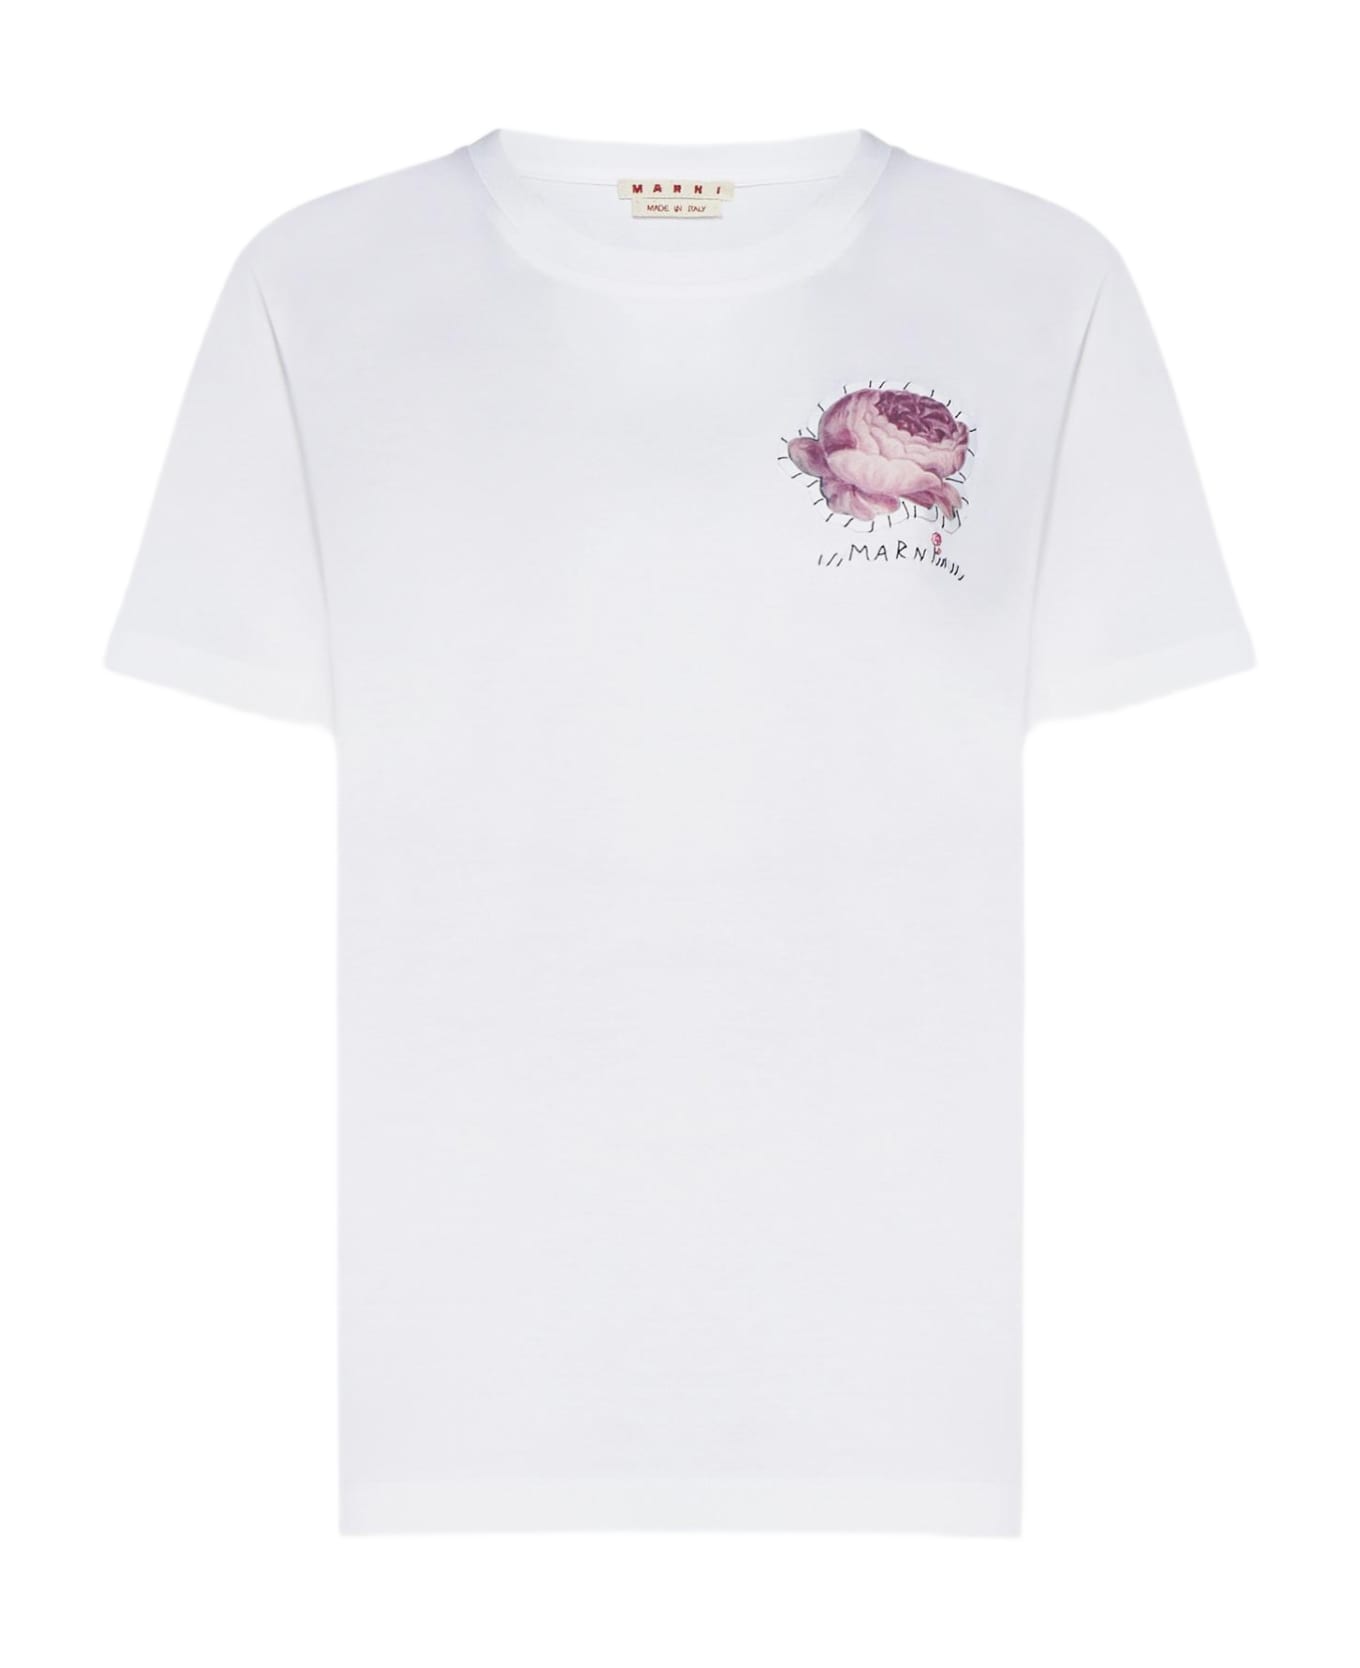 Marni Print Cotton T-shirt - White Tシャツ